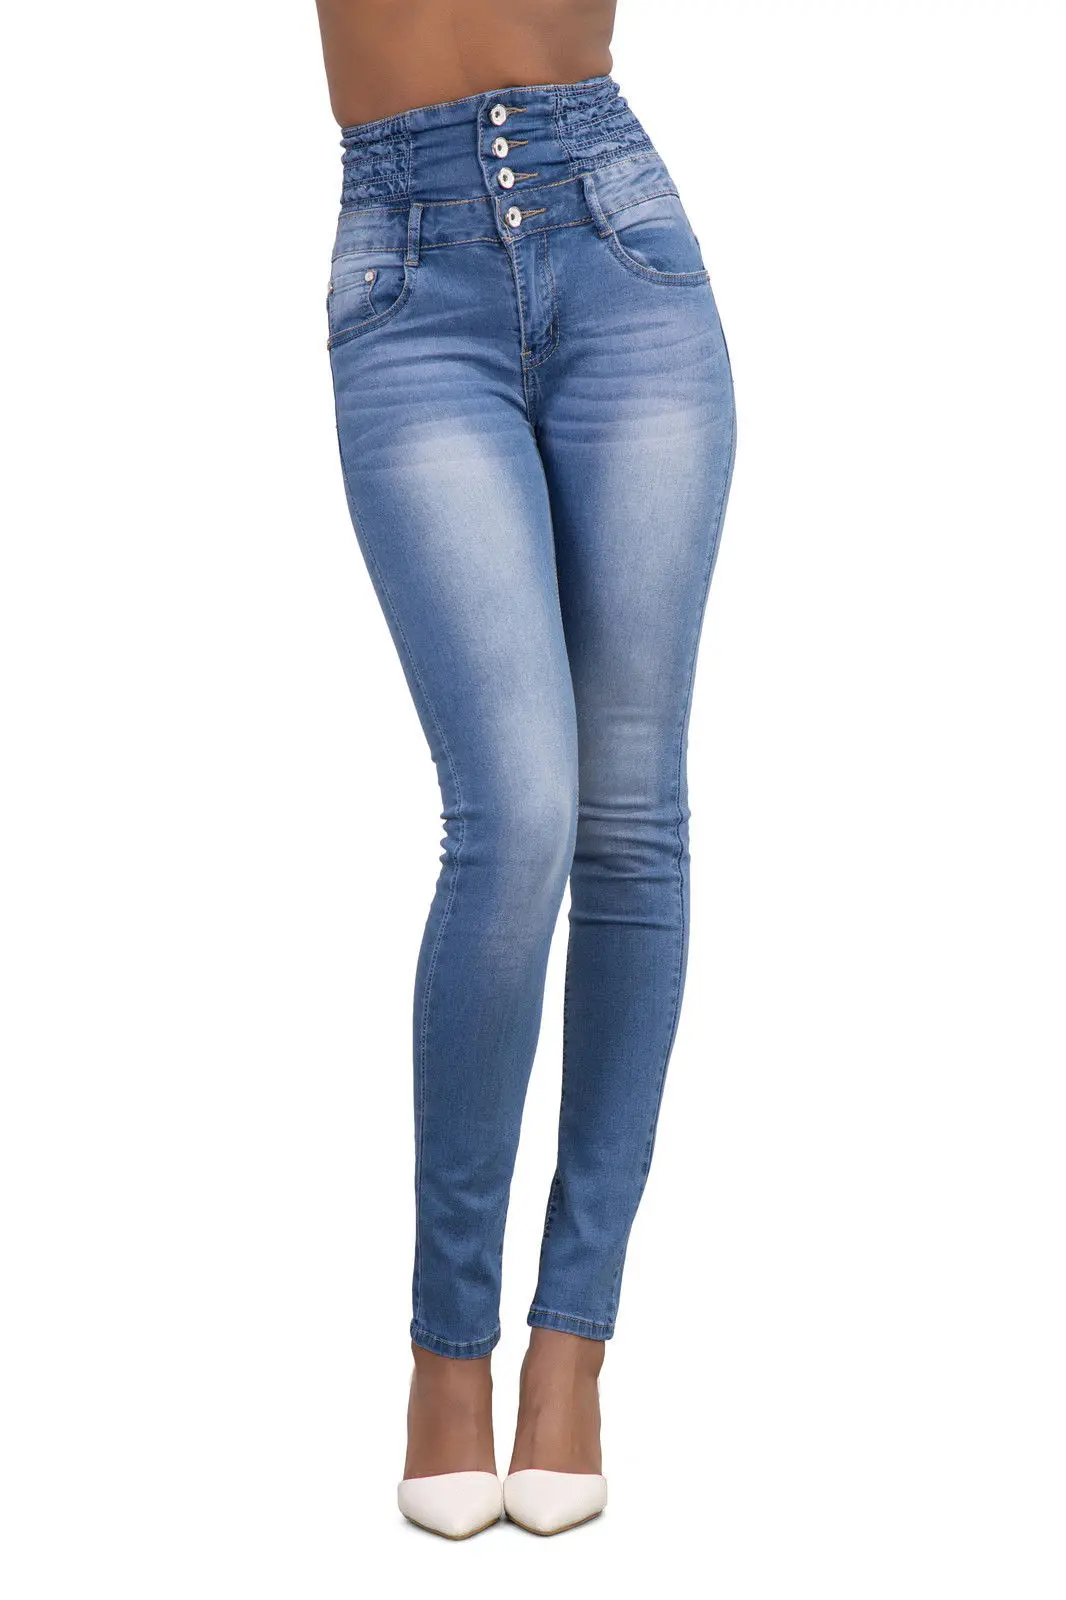 GPFDRL Новые 2018 модные джинсы осень зима пуговицы Высокая талия узкие брюки OL женские джинсовые брюки женские Pencile брюки